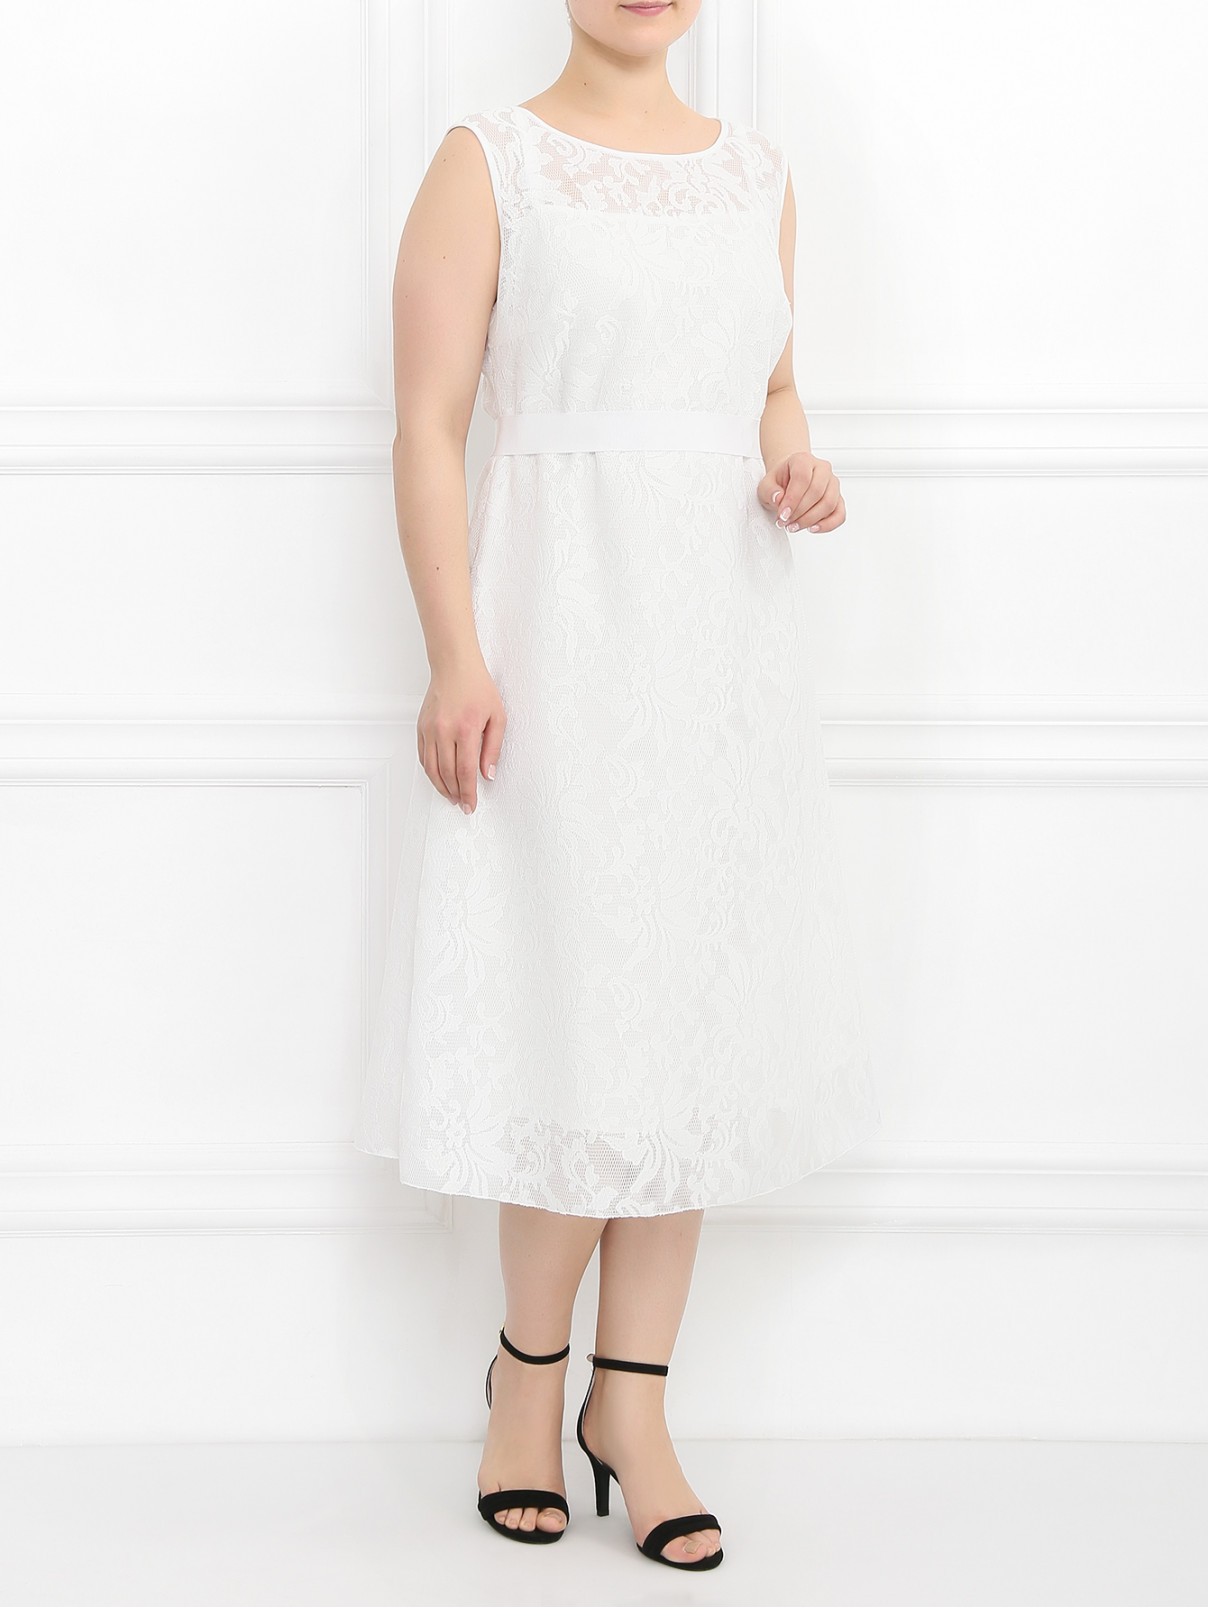 Кружевное платье-футляр Marina Rinaldi  –  Модель Общий вид  – Цвет:  Белый